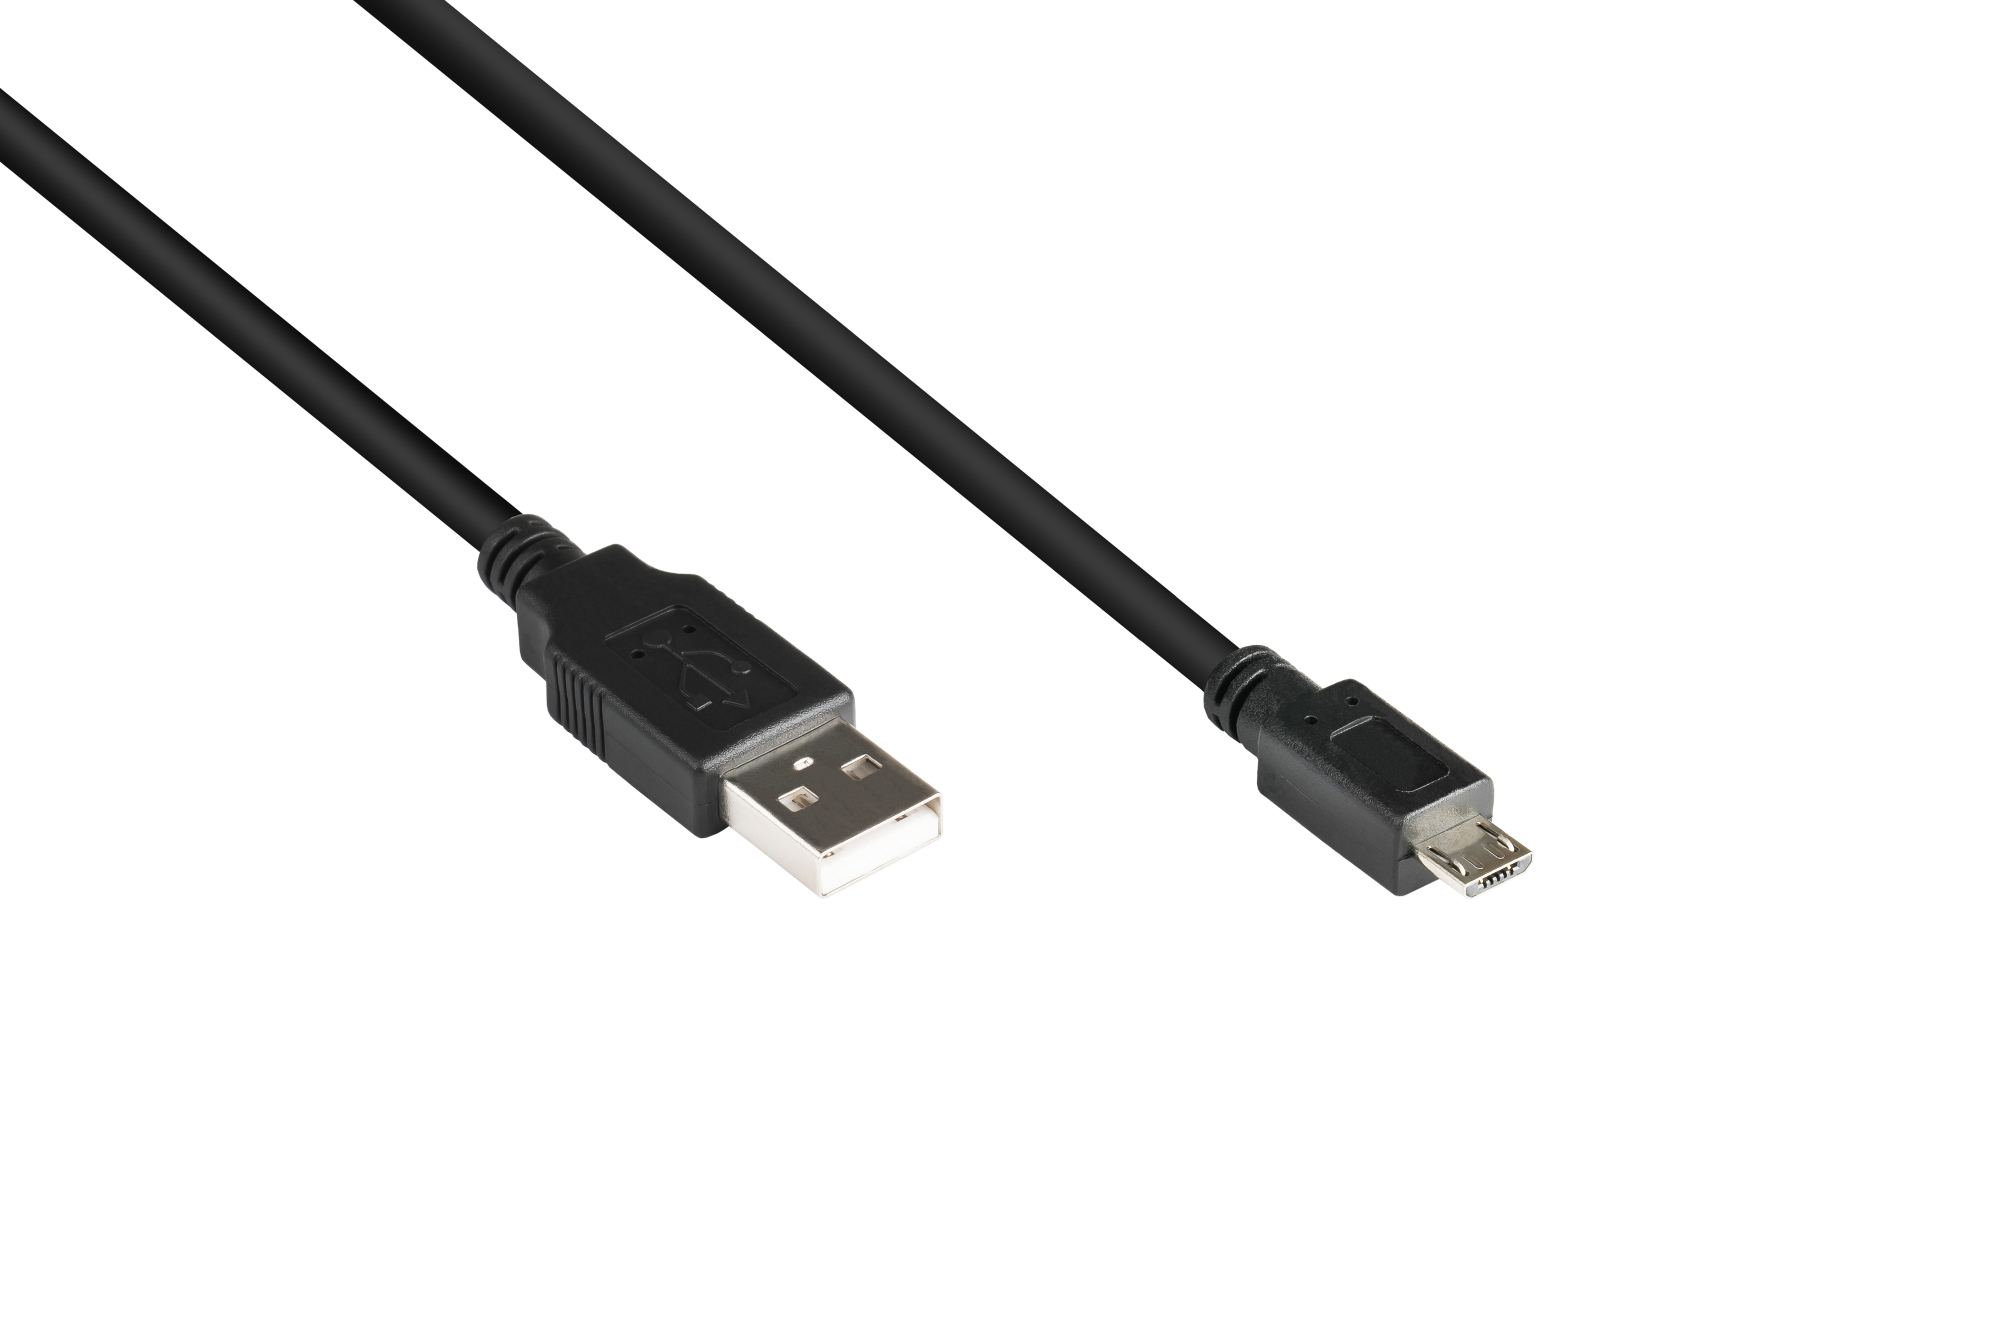 Anschlusskabel USB 2.0 Stecker A an Stecker Micro B, schwarz, 0,6m, Good Connections®